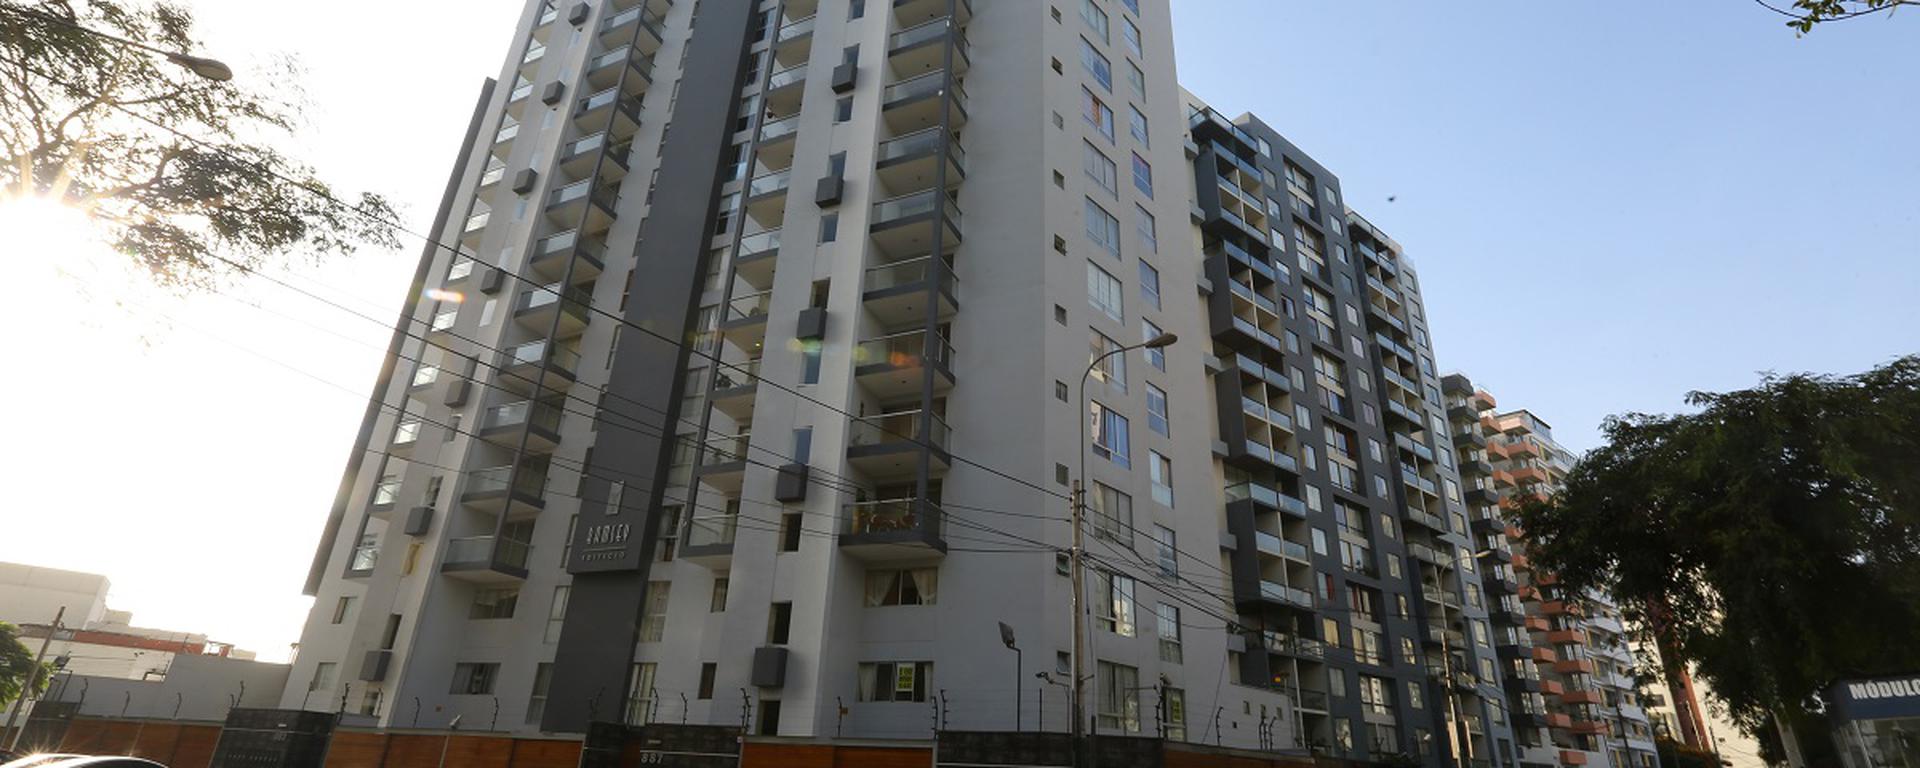 Precio de viviendas subió en 16,5% en Lima